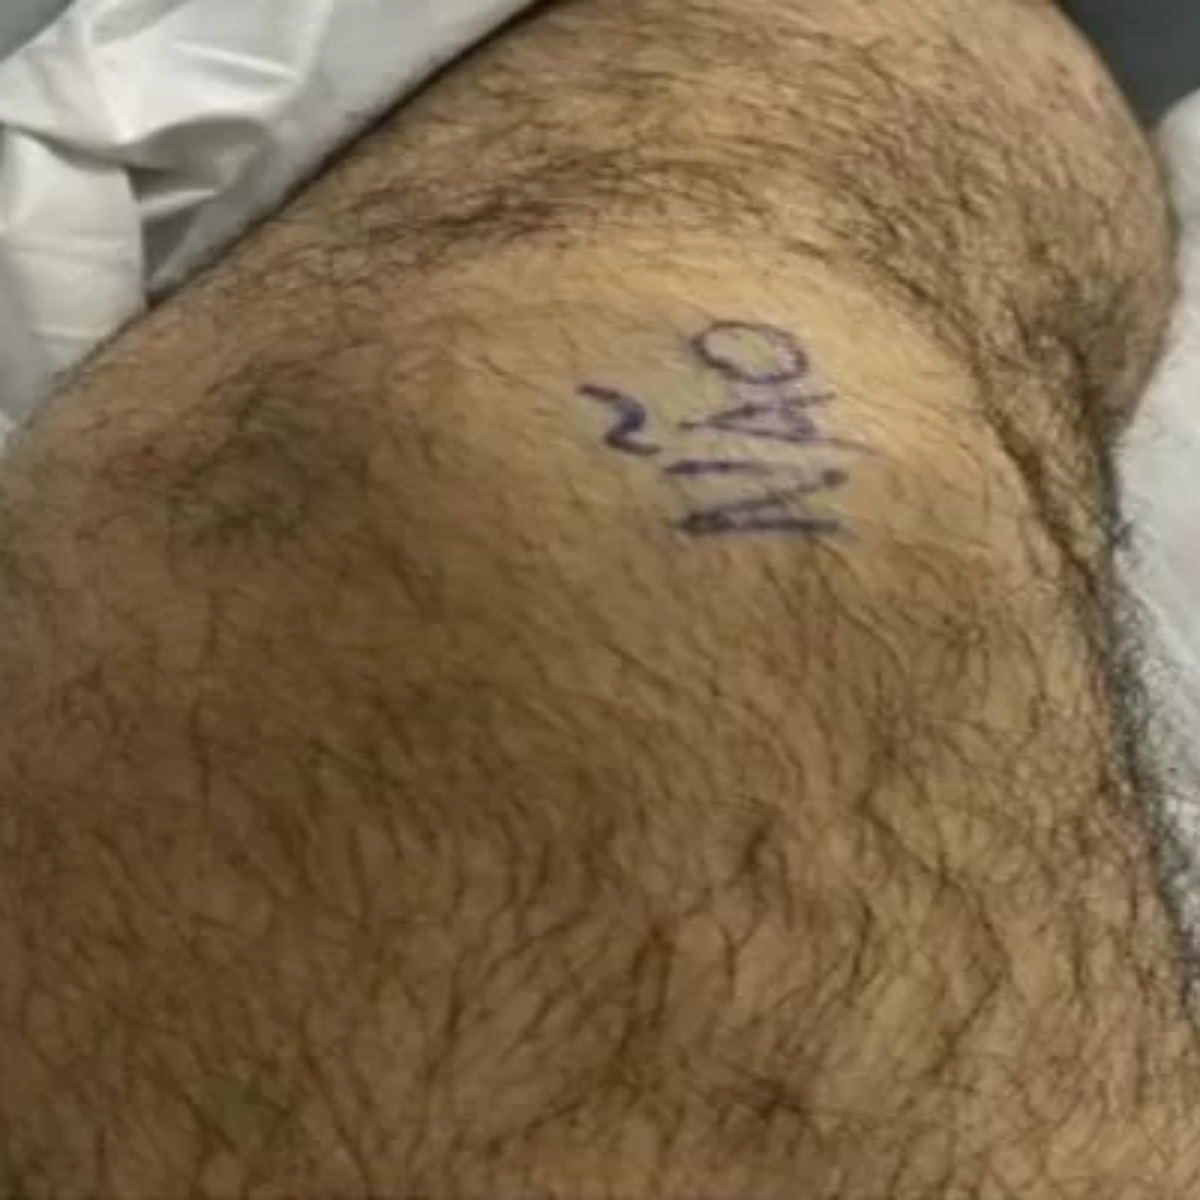  Homem marca joelho com 'sim' e 'não' para evitar erro médico em cirurgia 